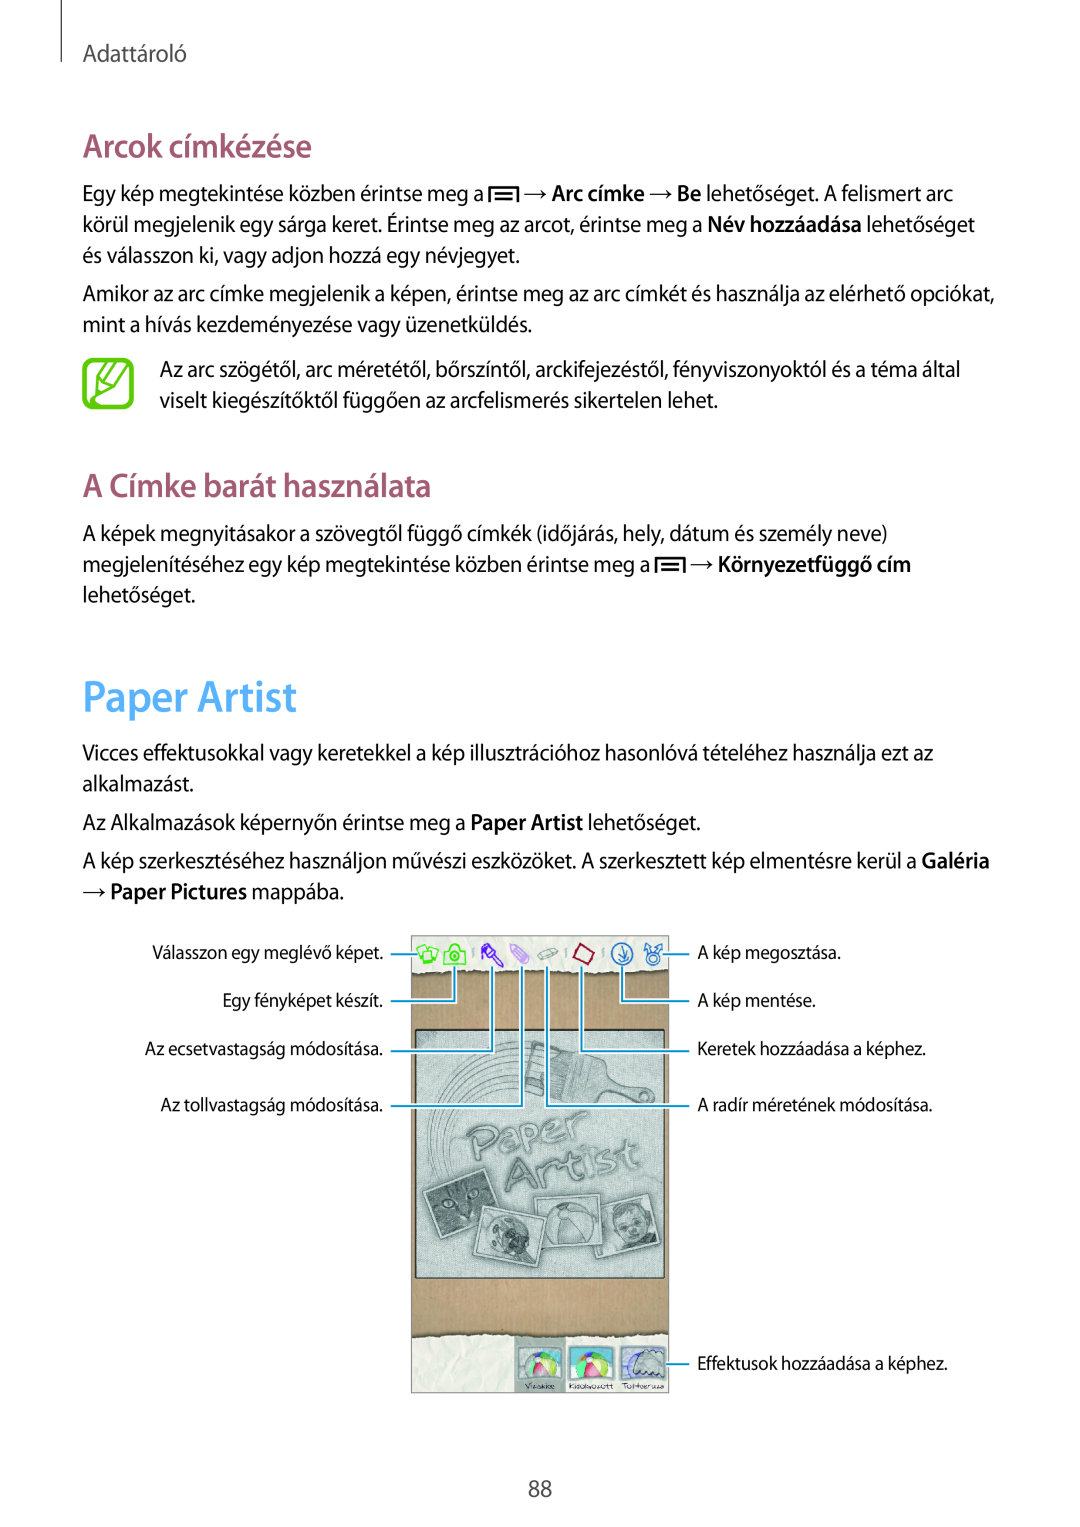 Samsung GT-N7100TADVVT manual Paper Artist, Arcok címkézése, A Címke barát használata, → Paper Pictures mappába, Adattároló 